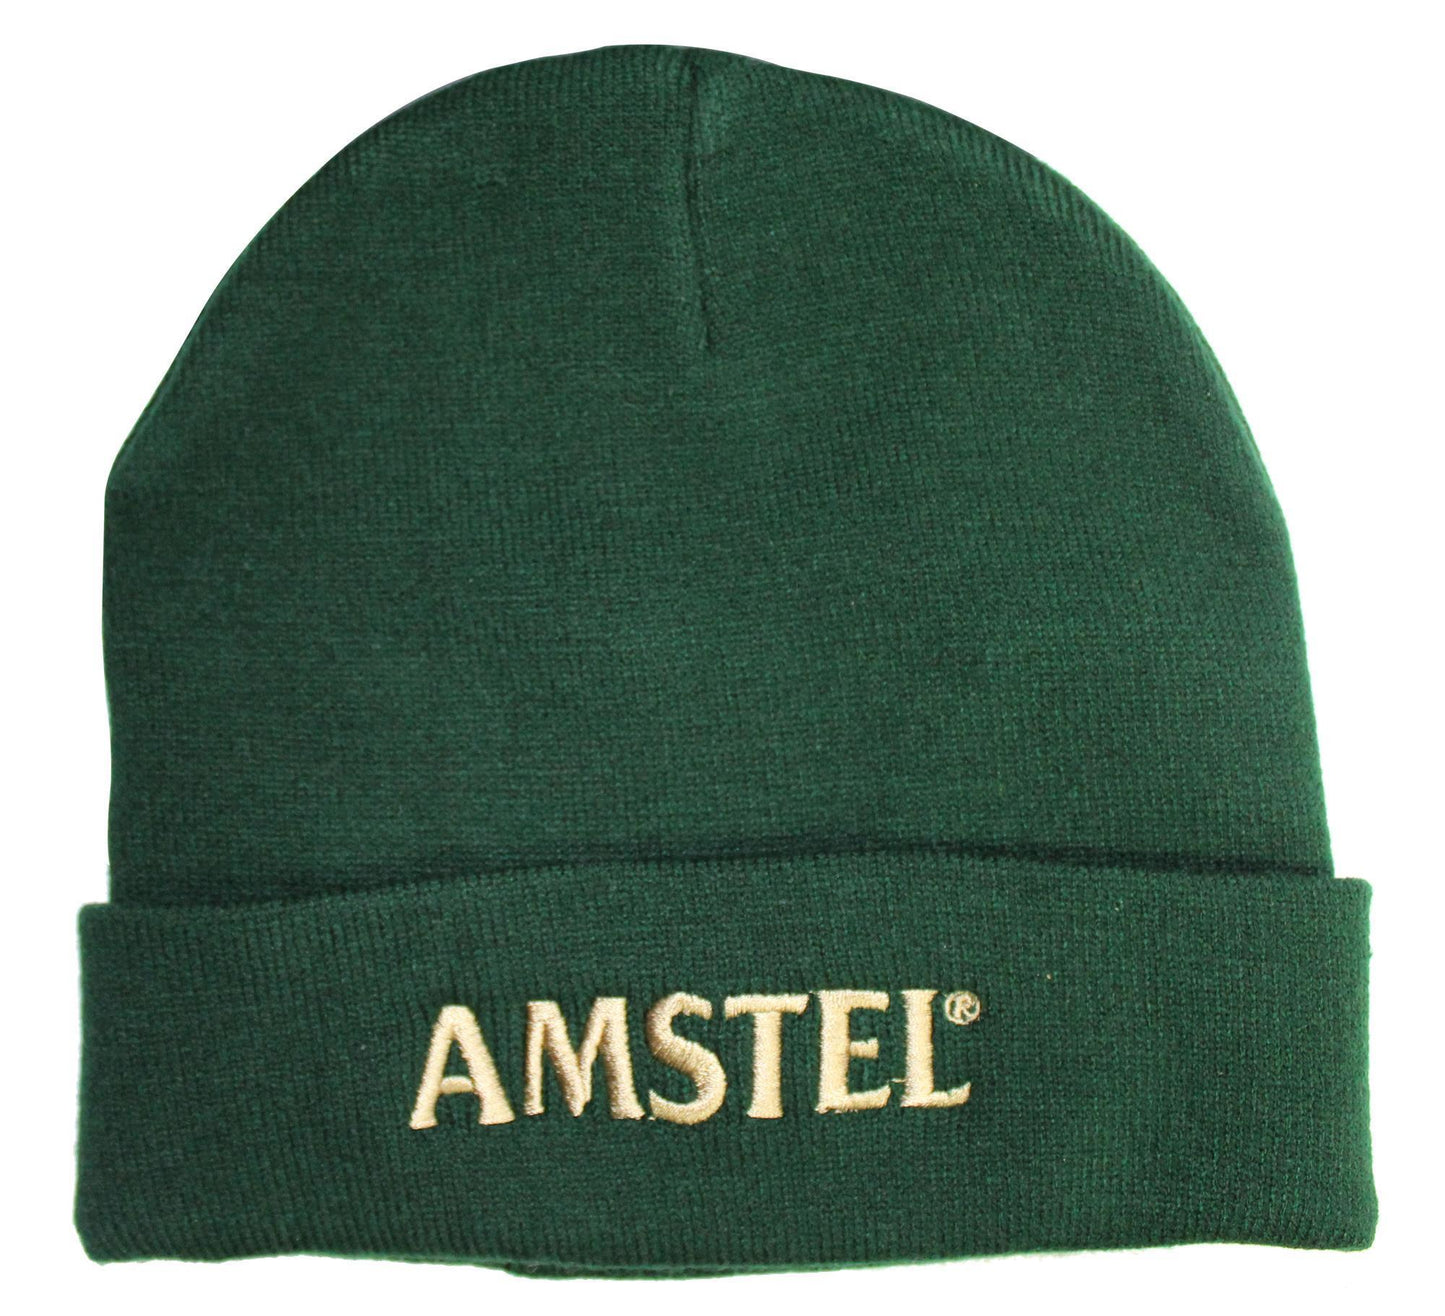 AMSB001 Amstel â Cuffed Knitted Beanie